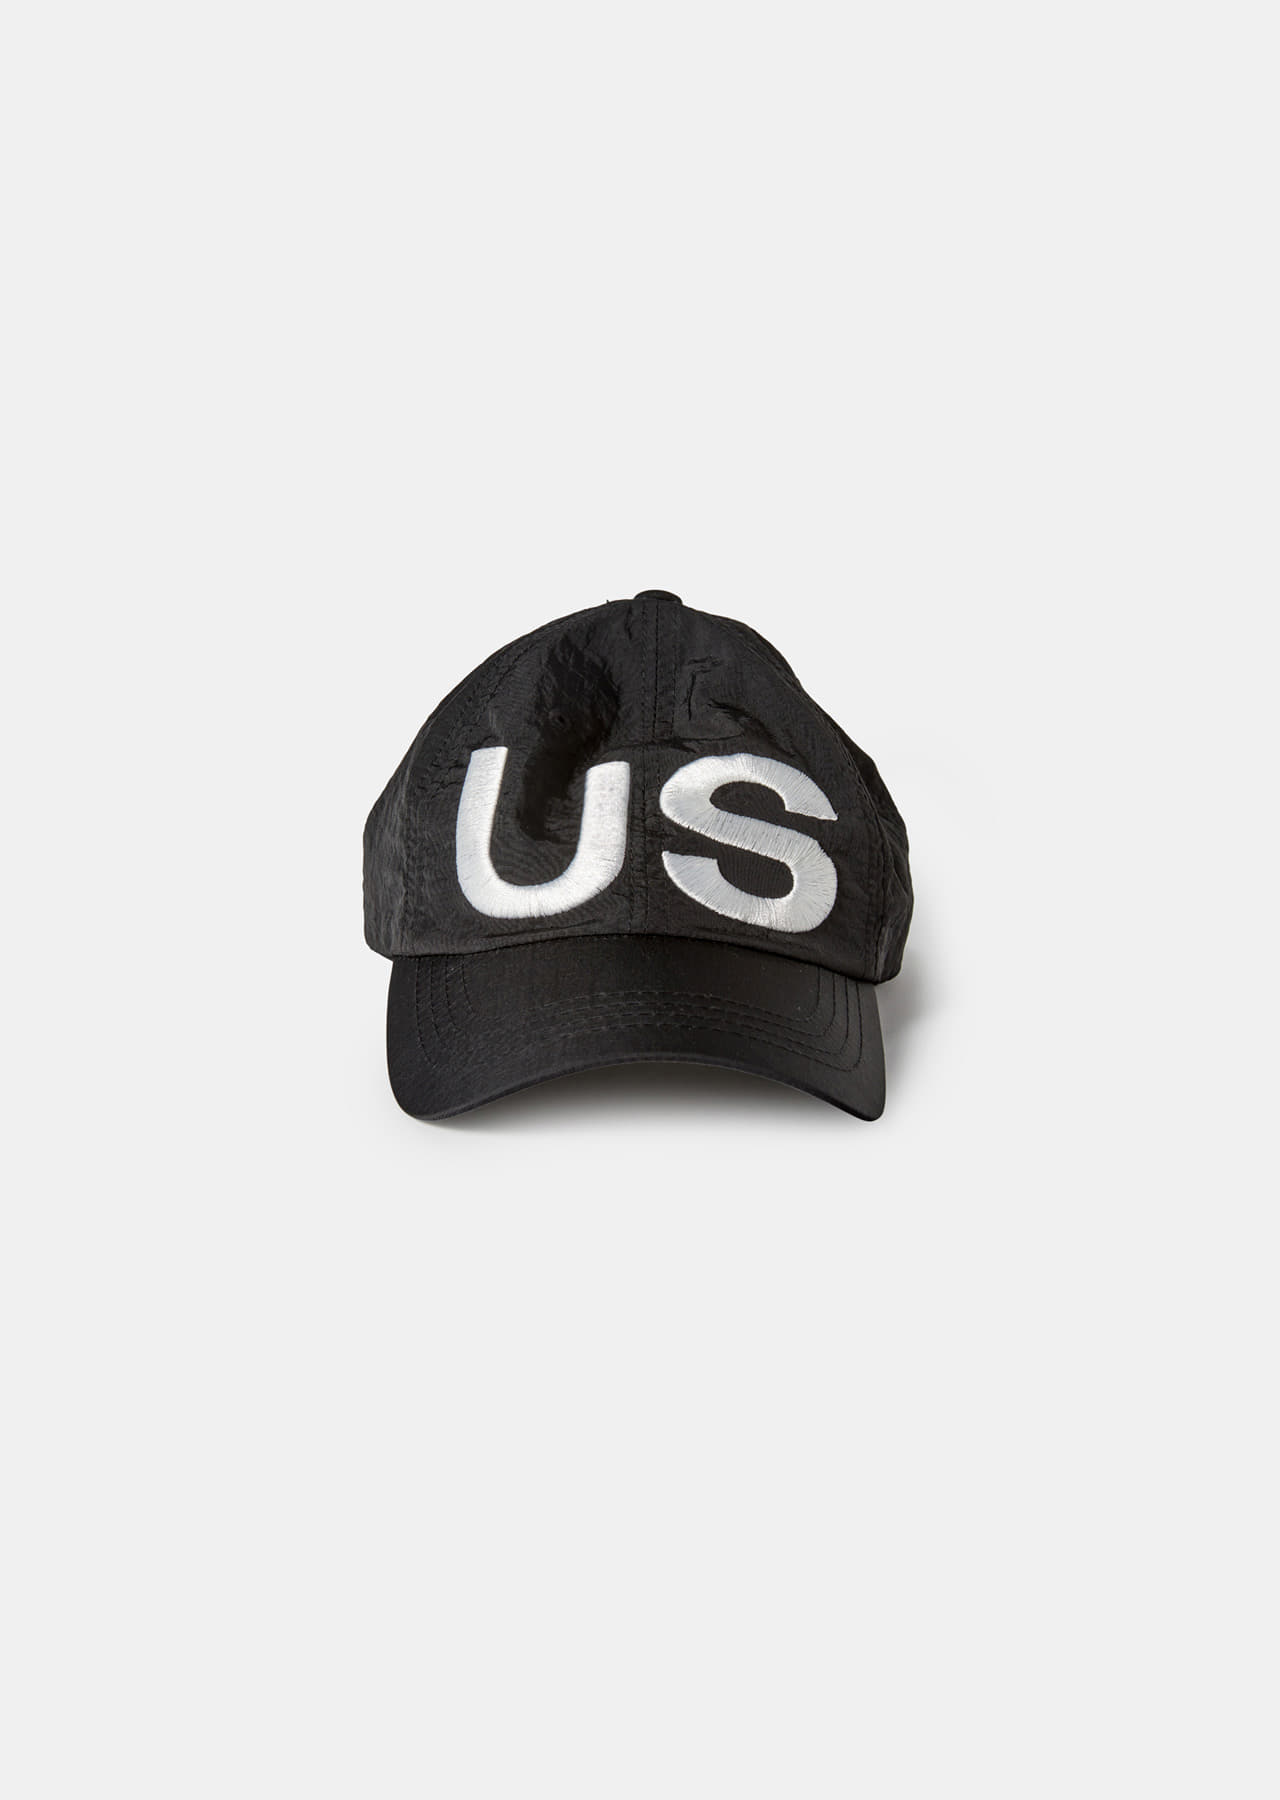 US CAP BLACK